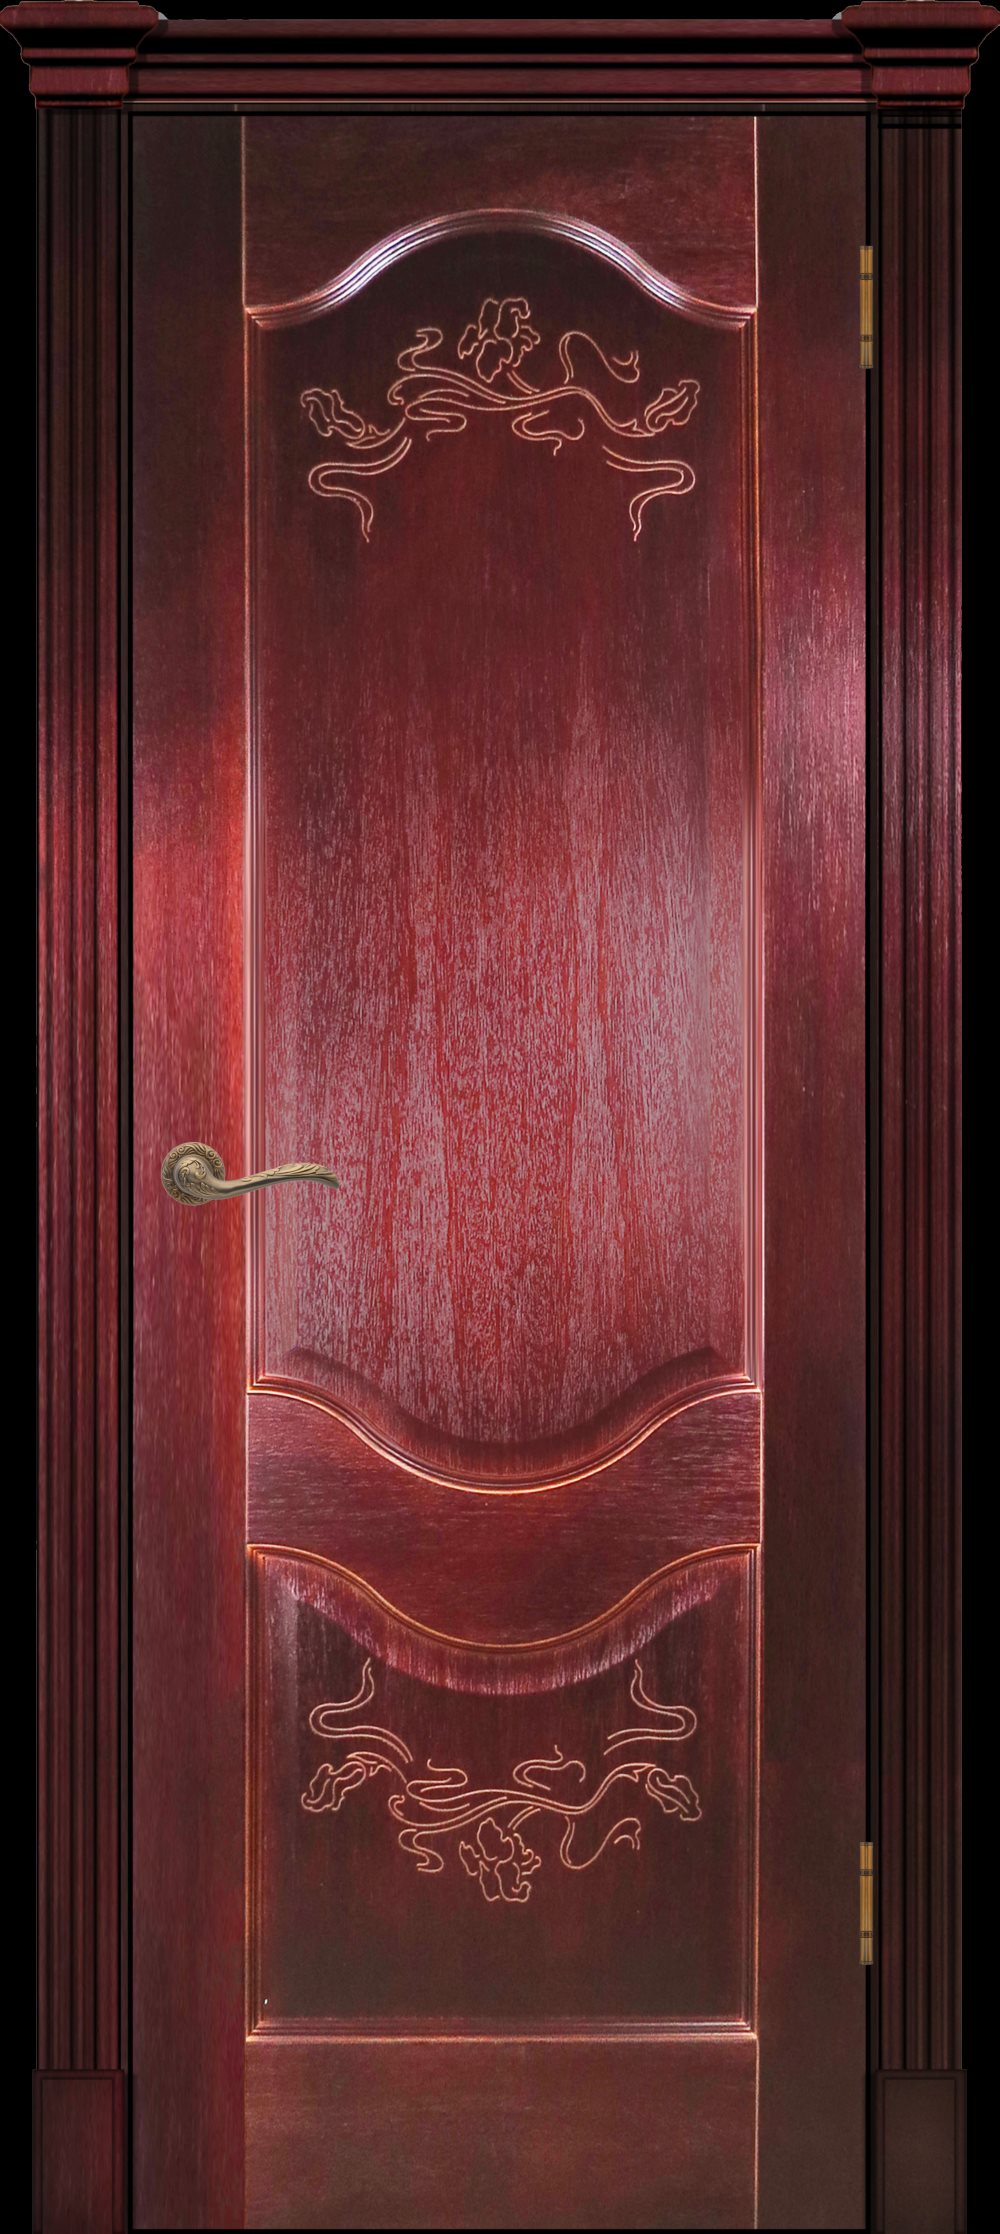 Сочетание цвета напольного покрытия с цветом межкомнатных дверей